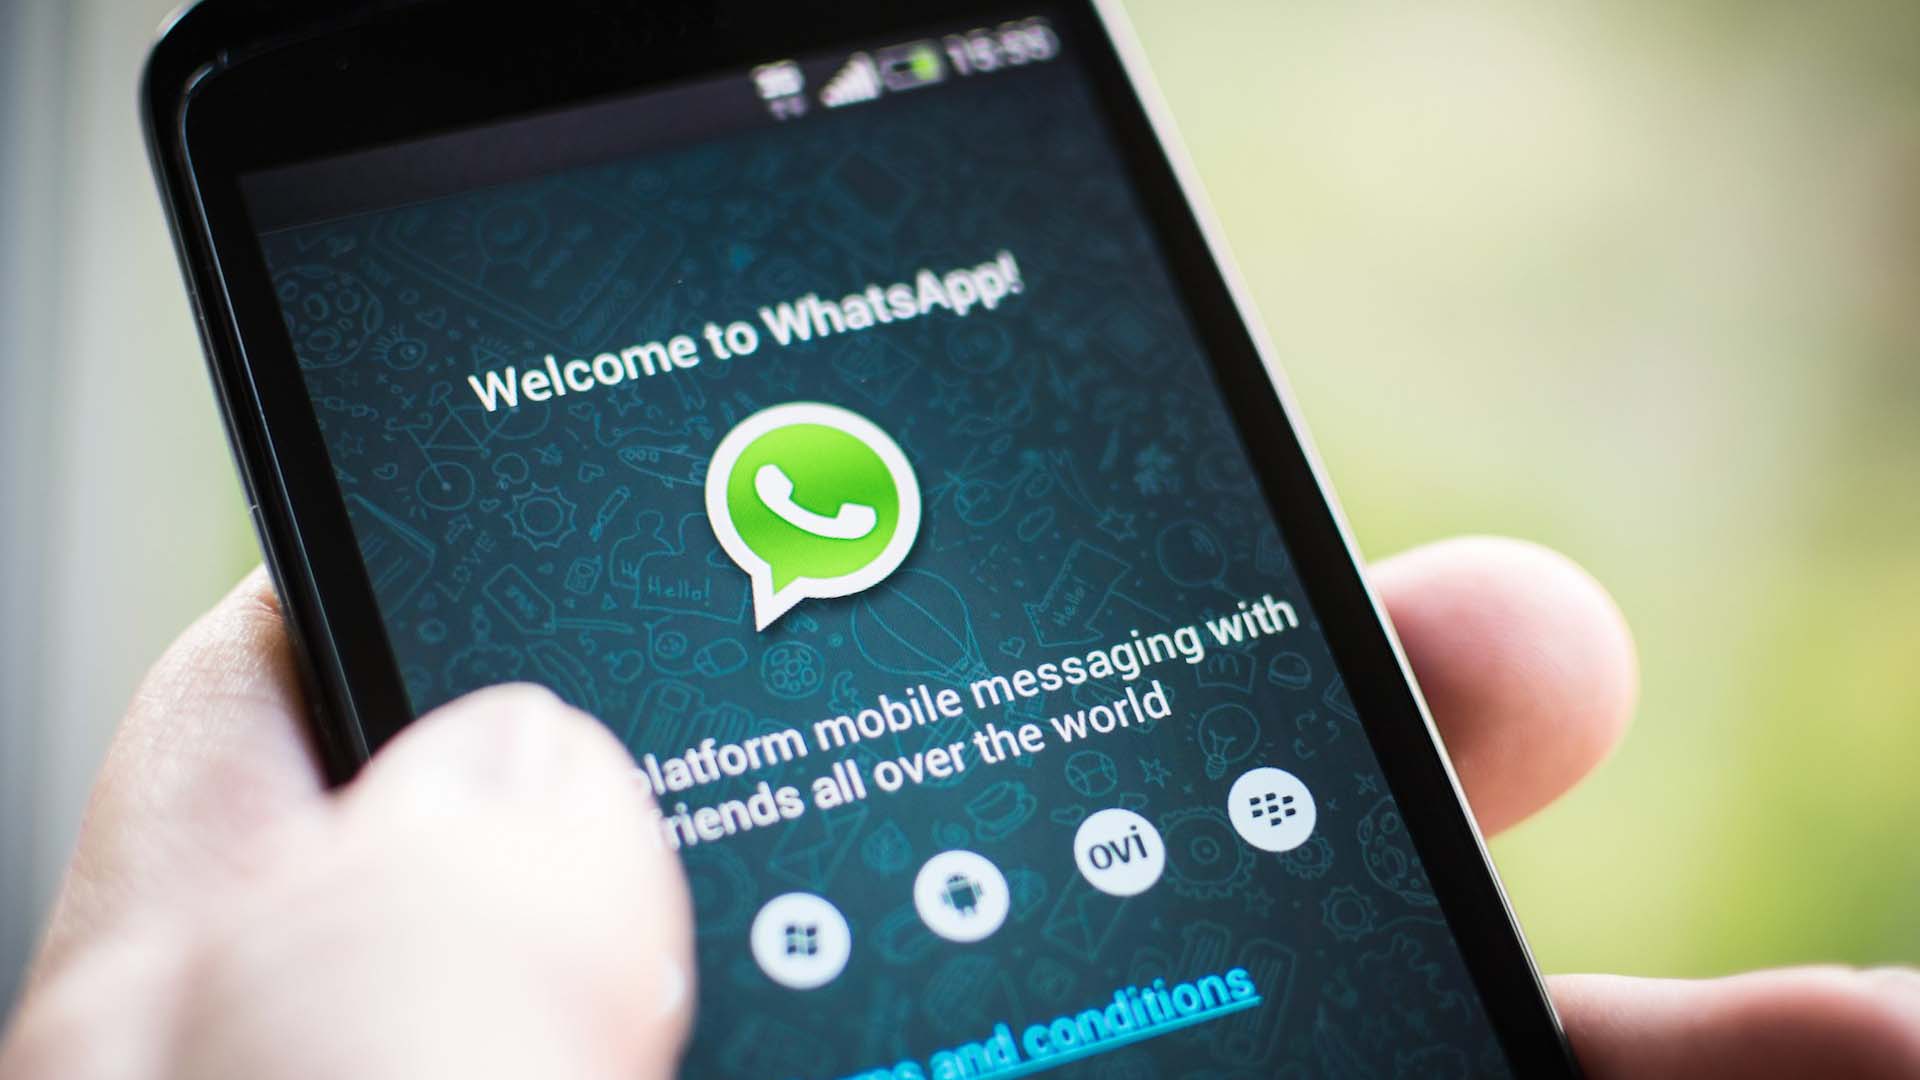 WhatsApp conserverait vos discussions privées même après suppression